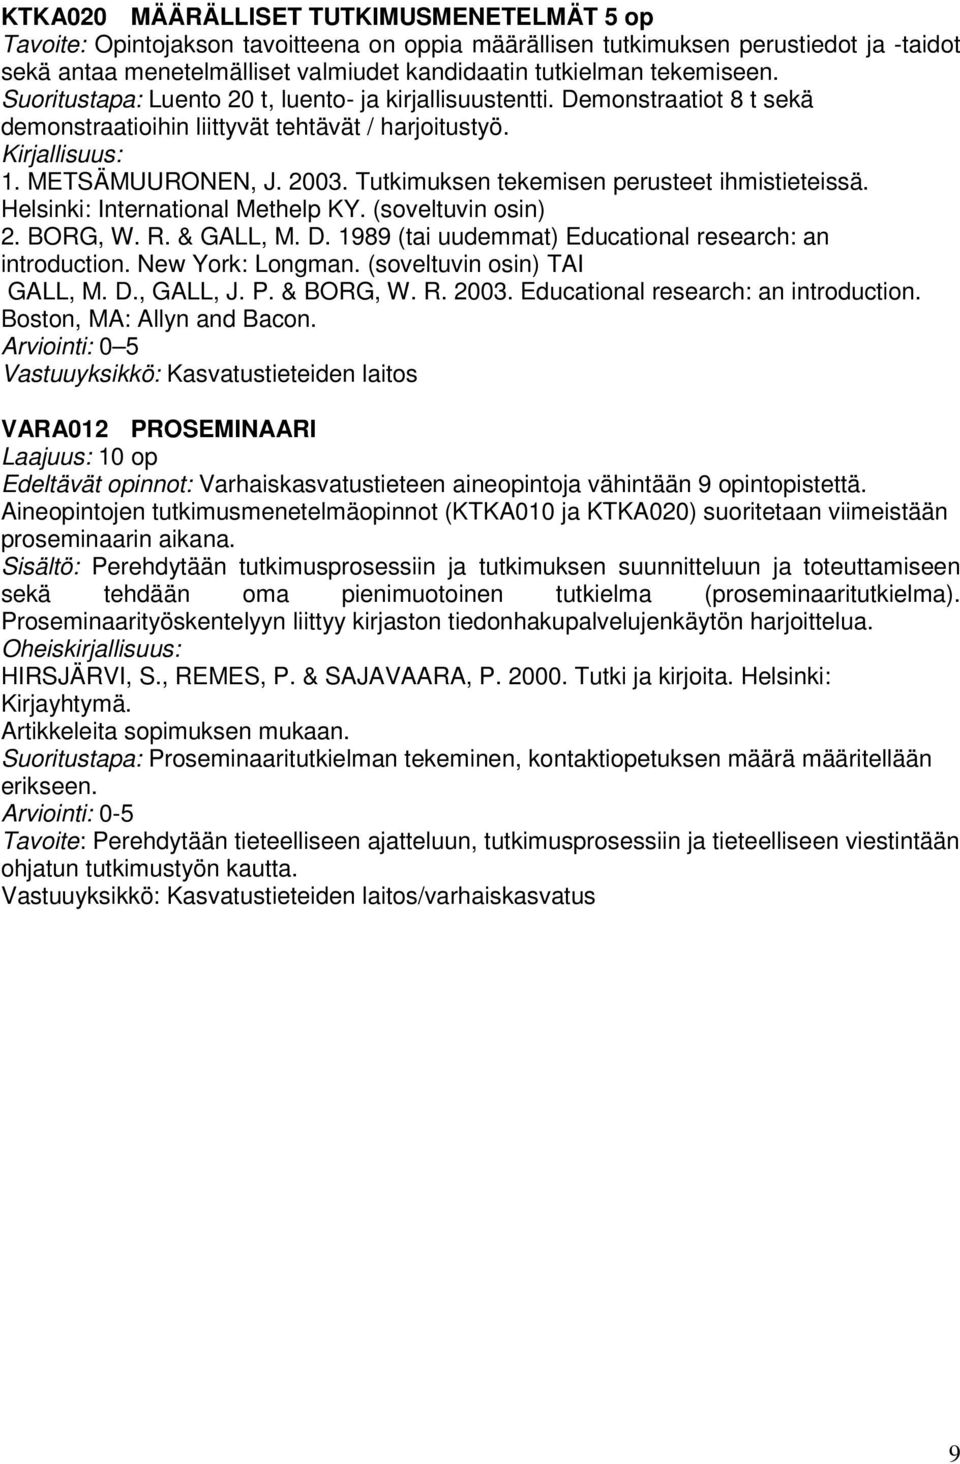 Tutkimuksen tekemisen perusteet ihmistieteissä. Helsinki: International Methelp KY. (soveltuvin osin) 2. BORG, W. R. & GALL, M. D. 1989 (tai uudemmat) Educational research: an introduction.